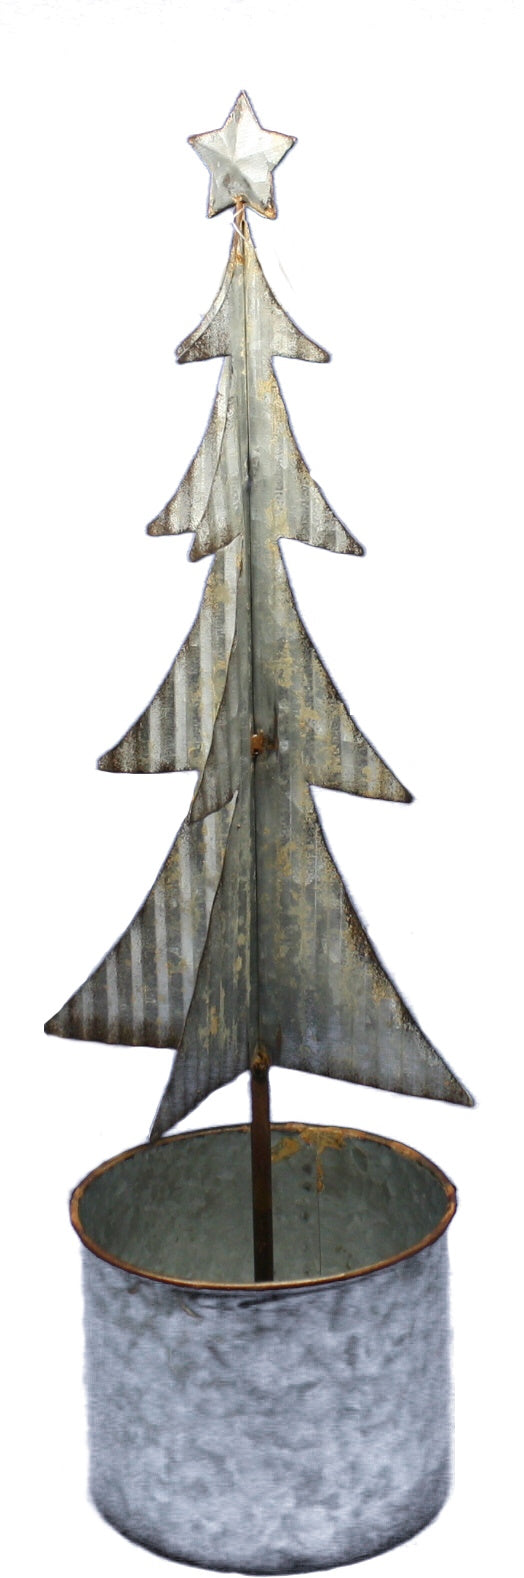 Metal Christmas Trees - - The Country Christmas Loft